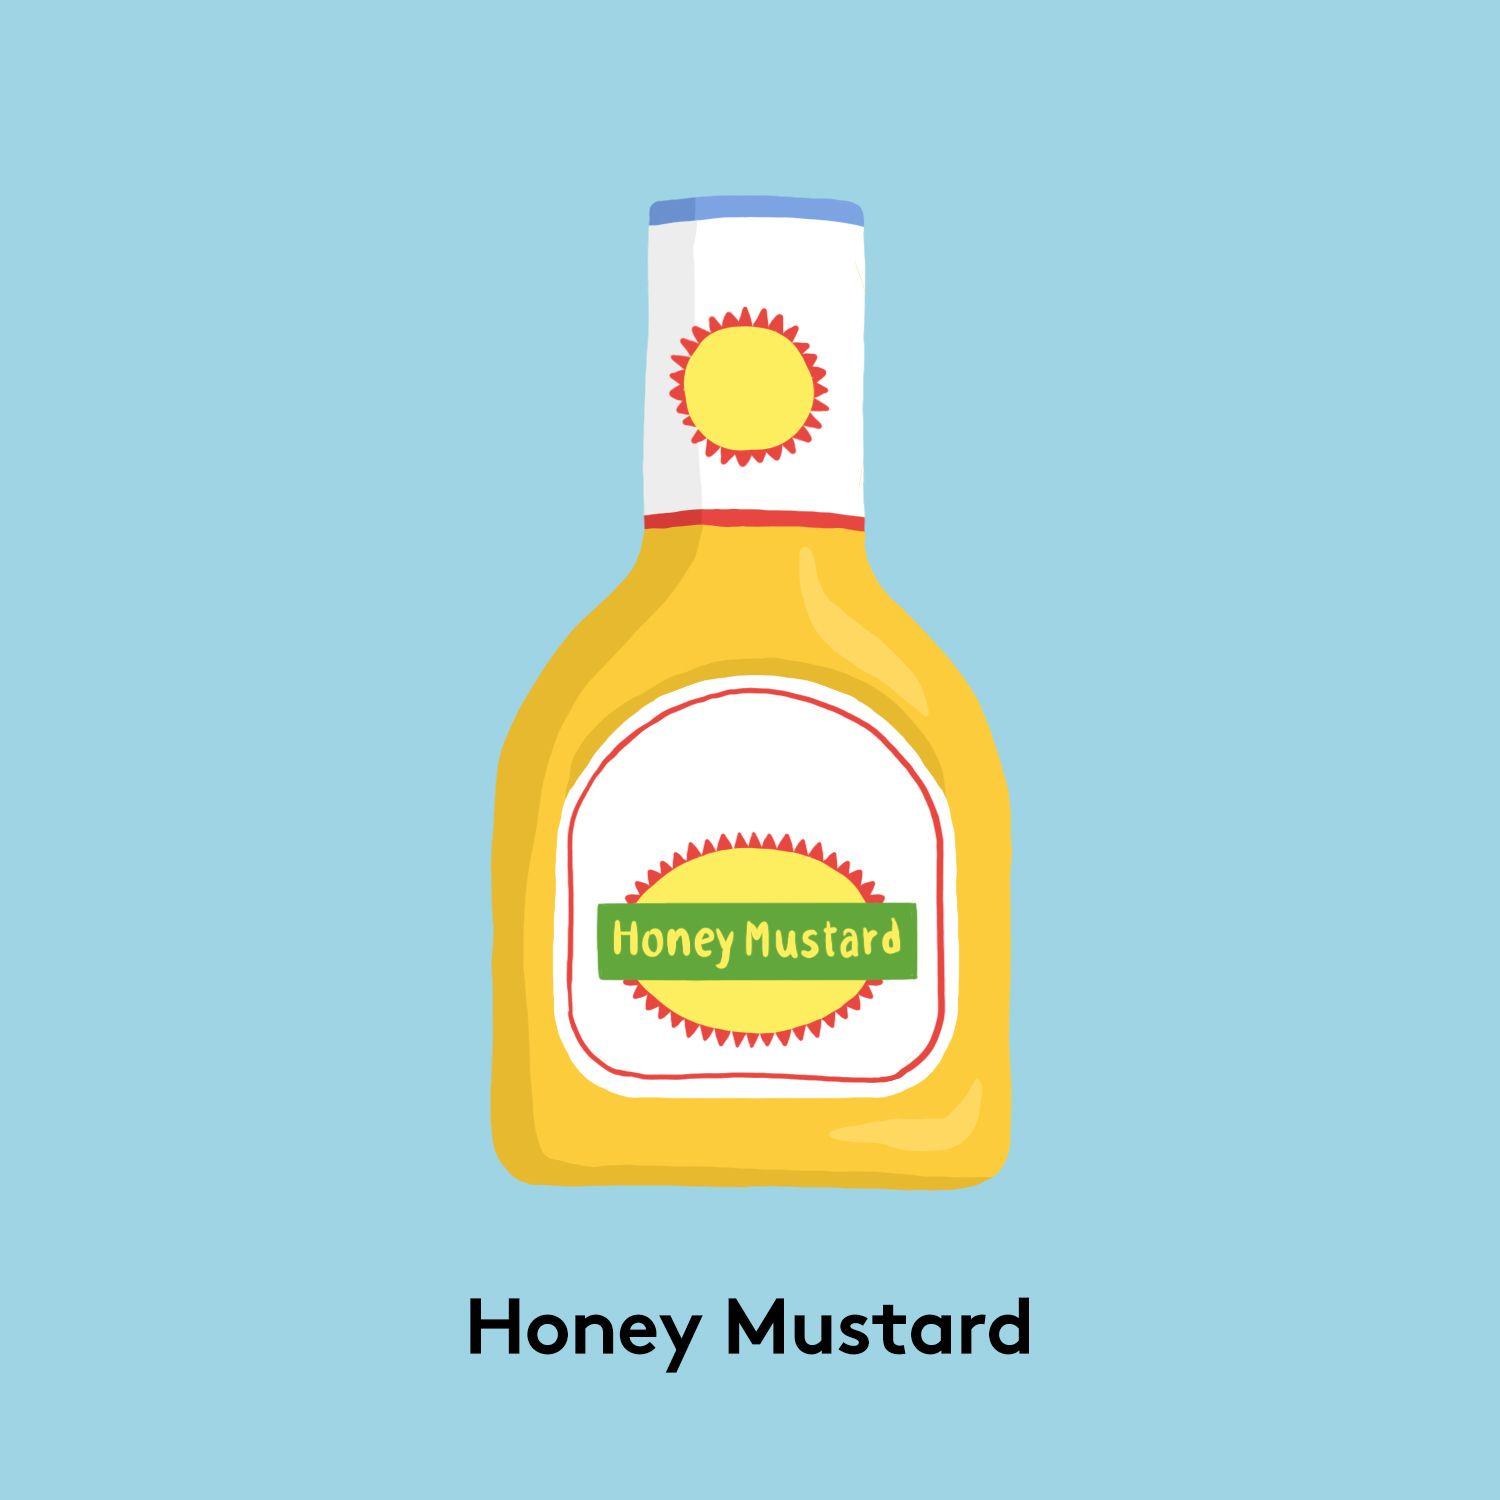 ประเภทของมัสตาร์ด - ภาพมัสตาร์ดน้ำผึ้ง